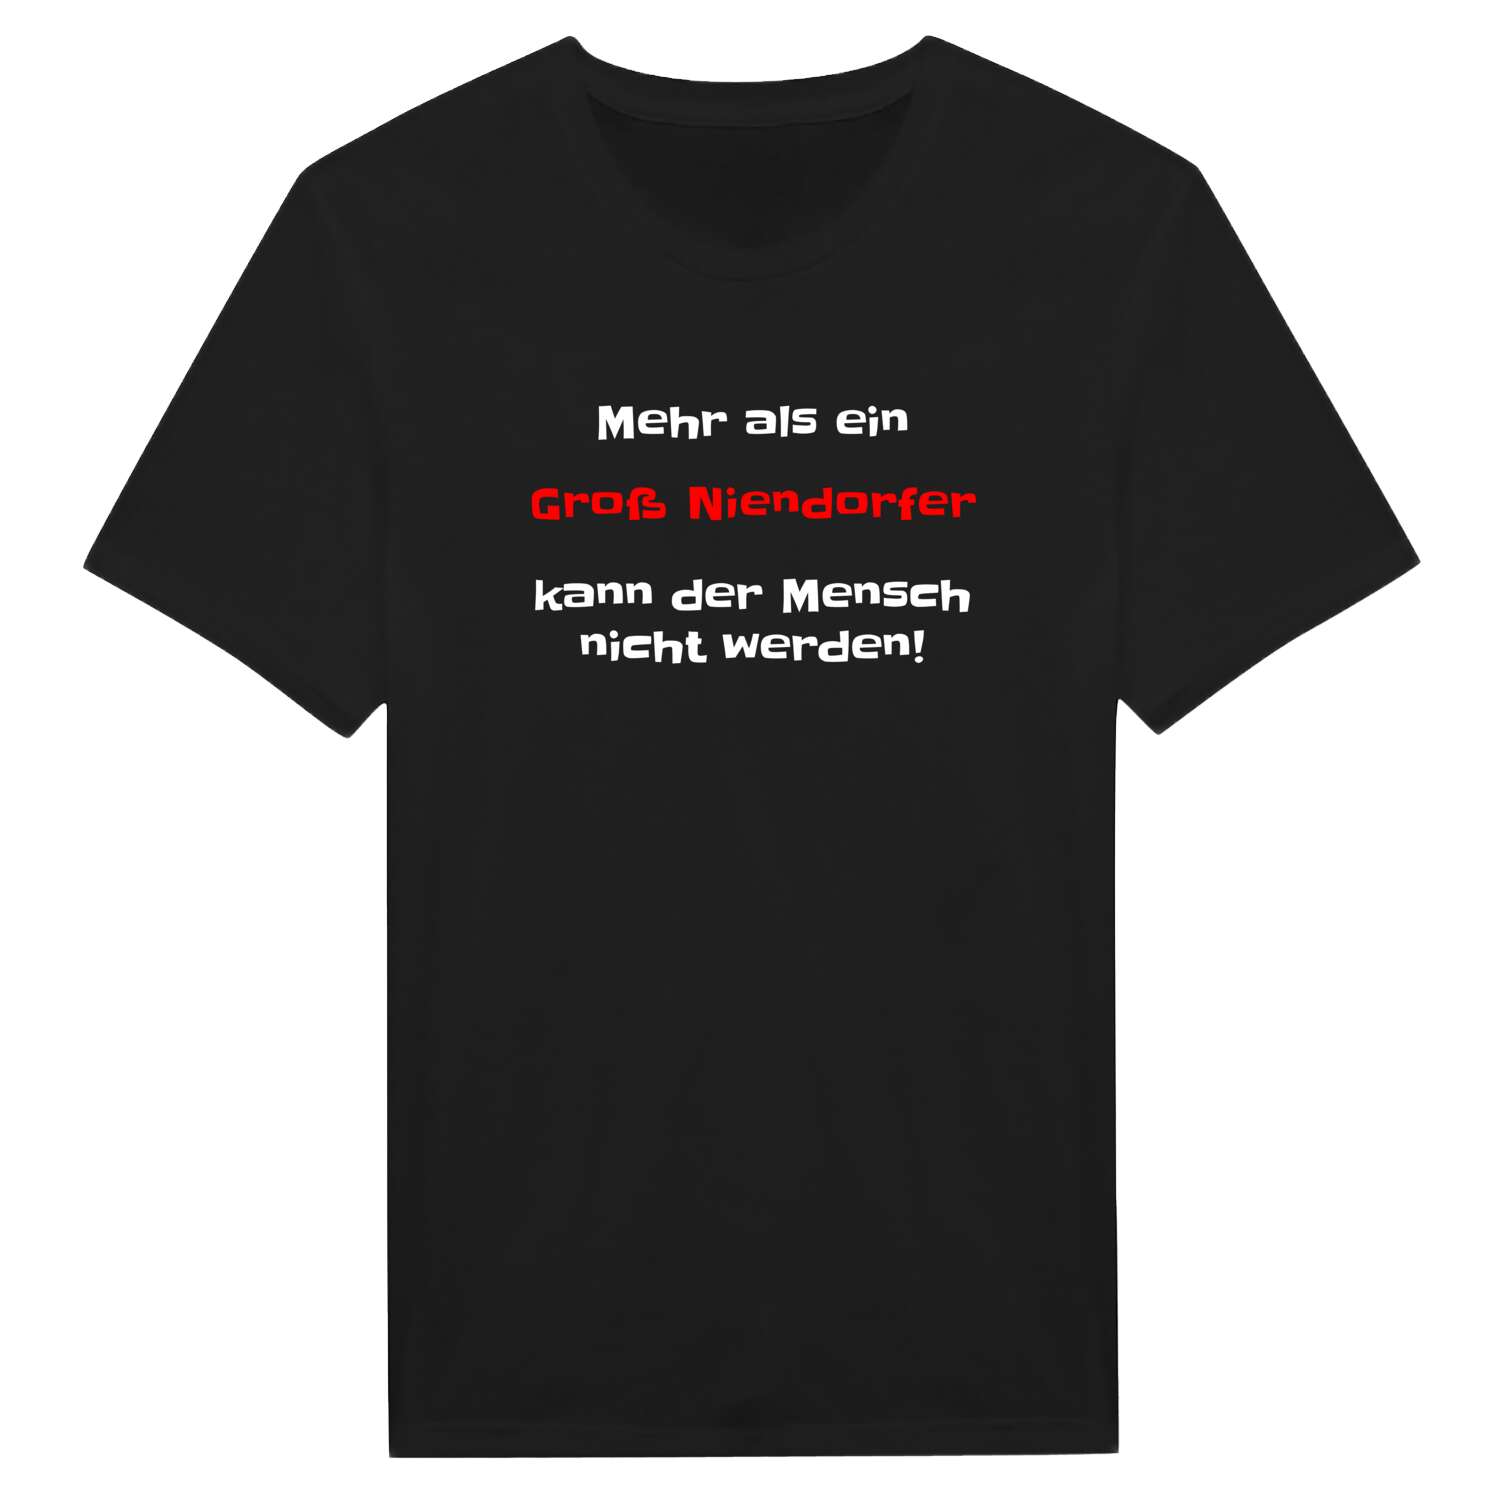 Groß Niendorf T-Shirt »Mehr als ein«